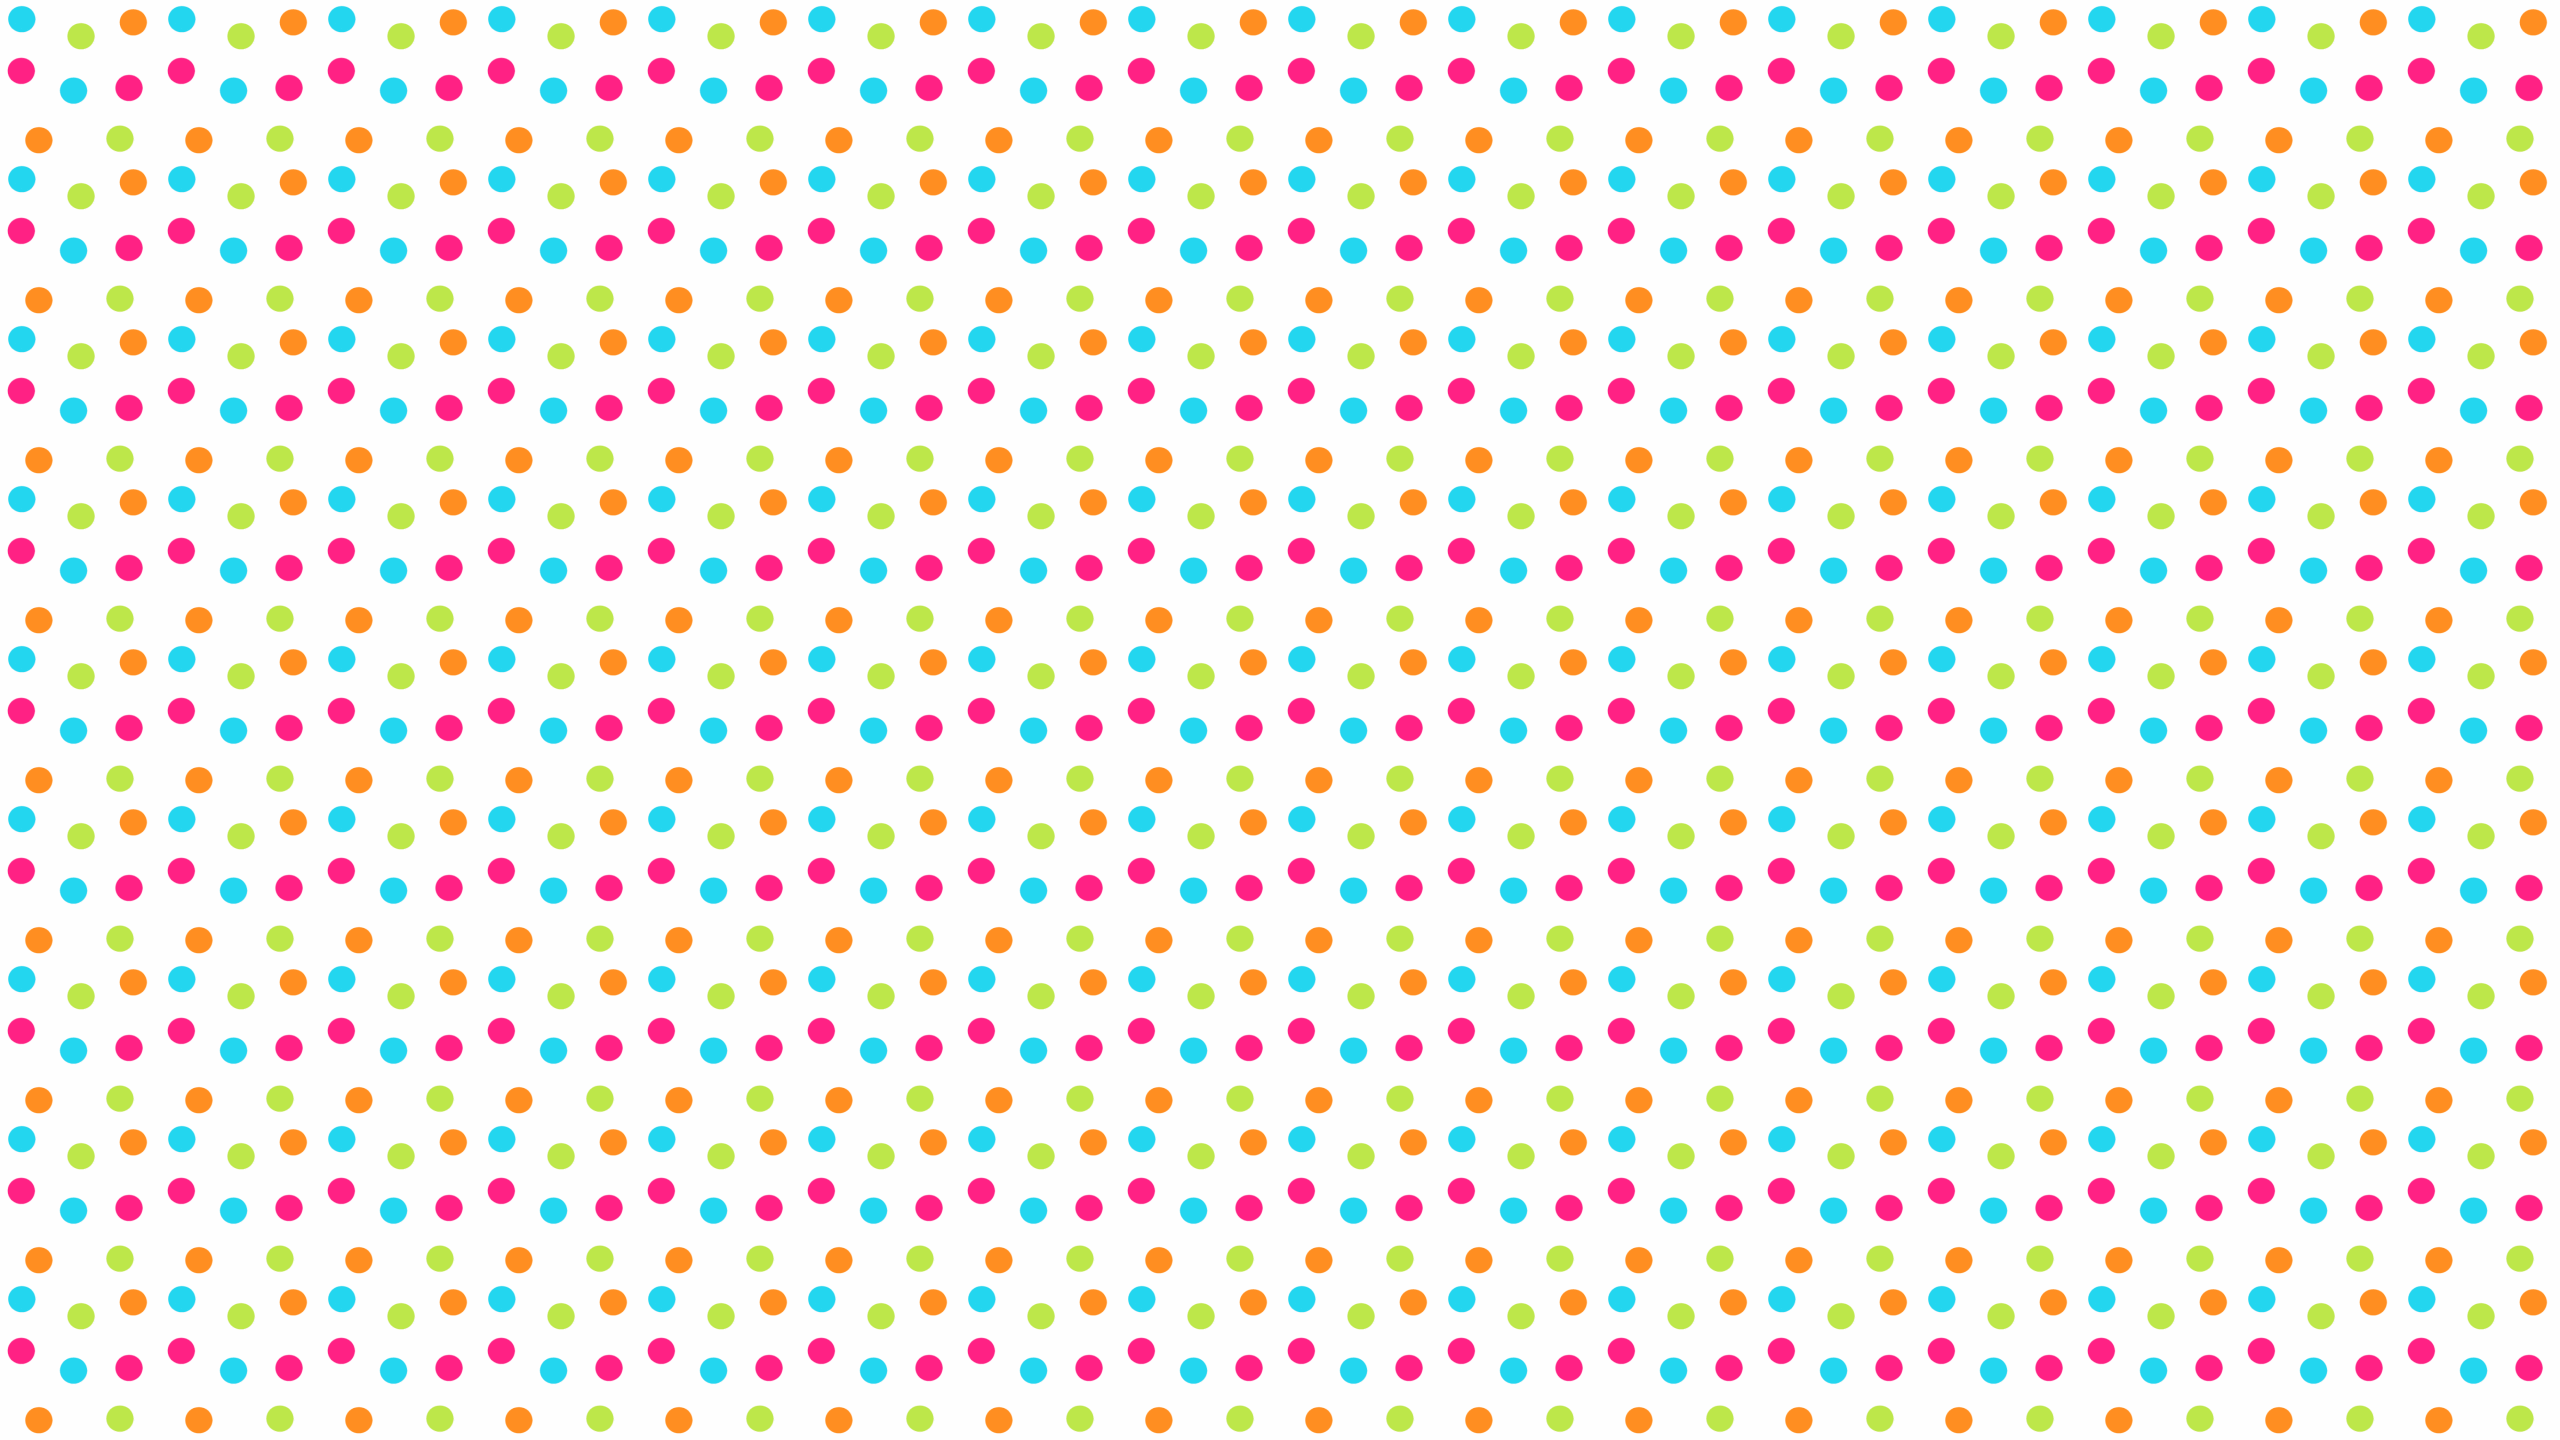 Polka Dot Wallpaper. HTC Dot Wallpaper, Polka Dot Wallpaper and Dot Hack Wallpaper